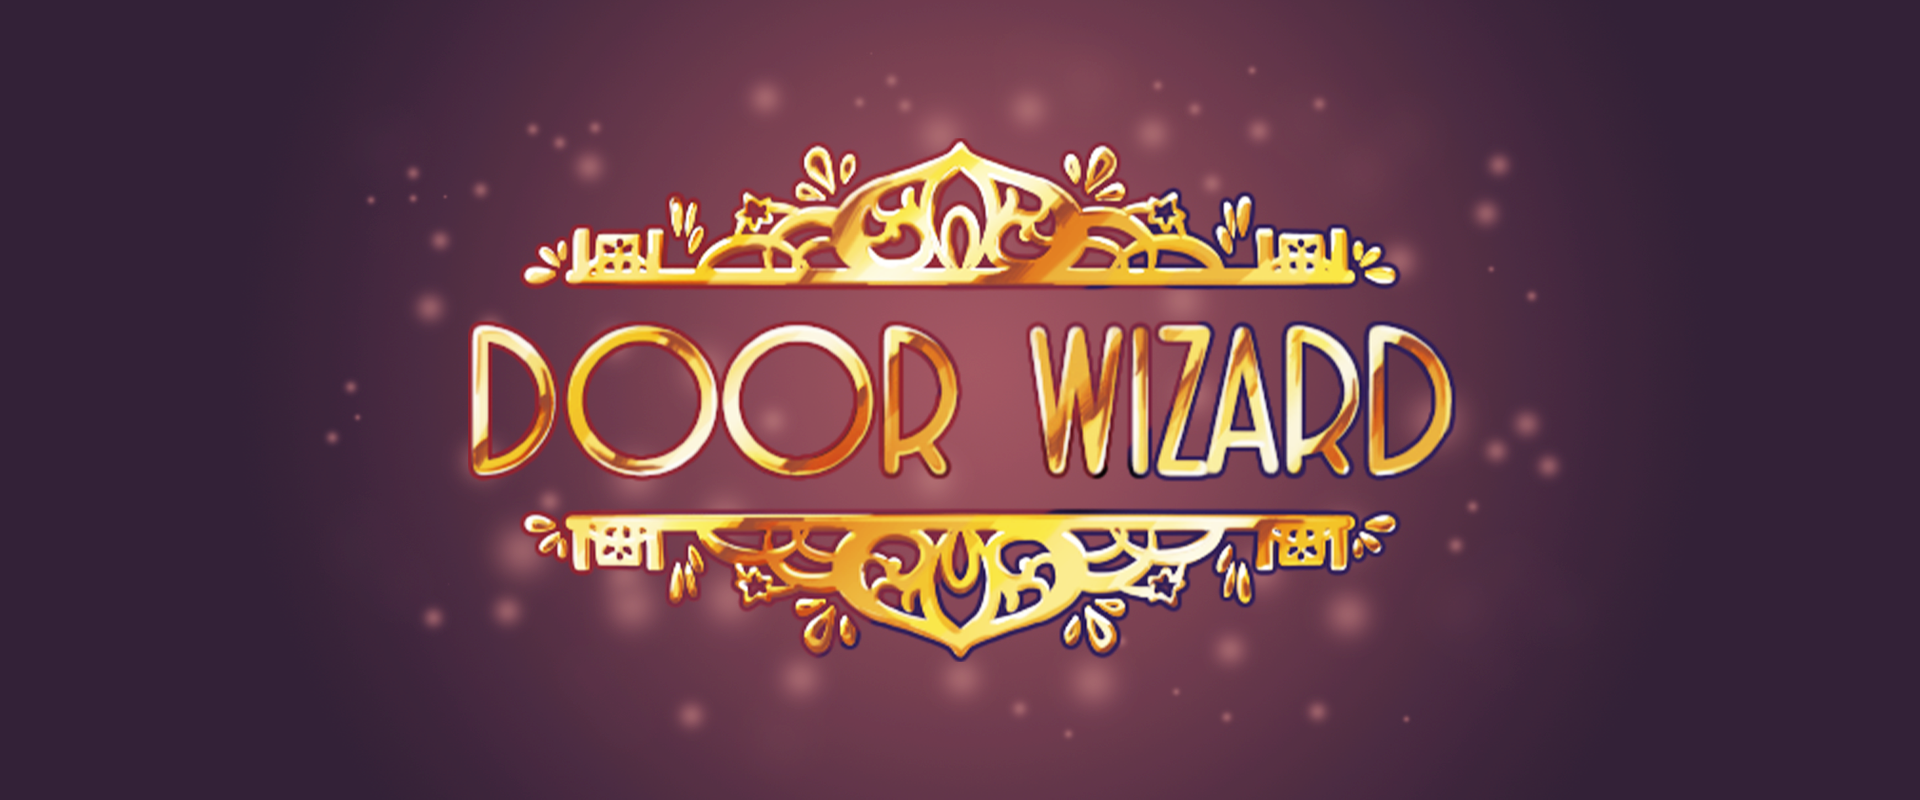 Door Wizard